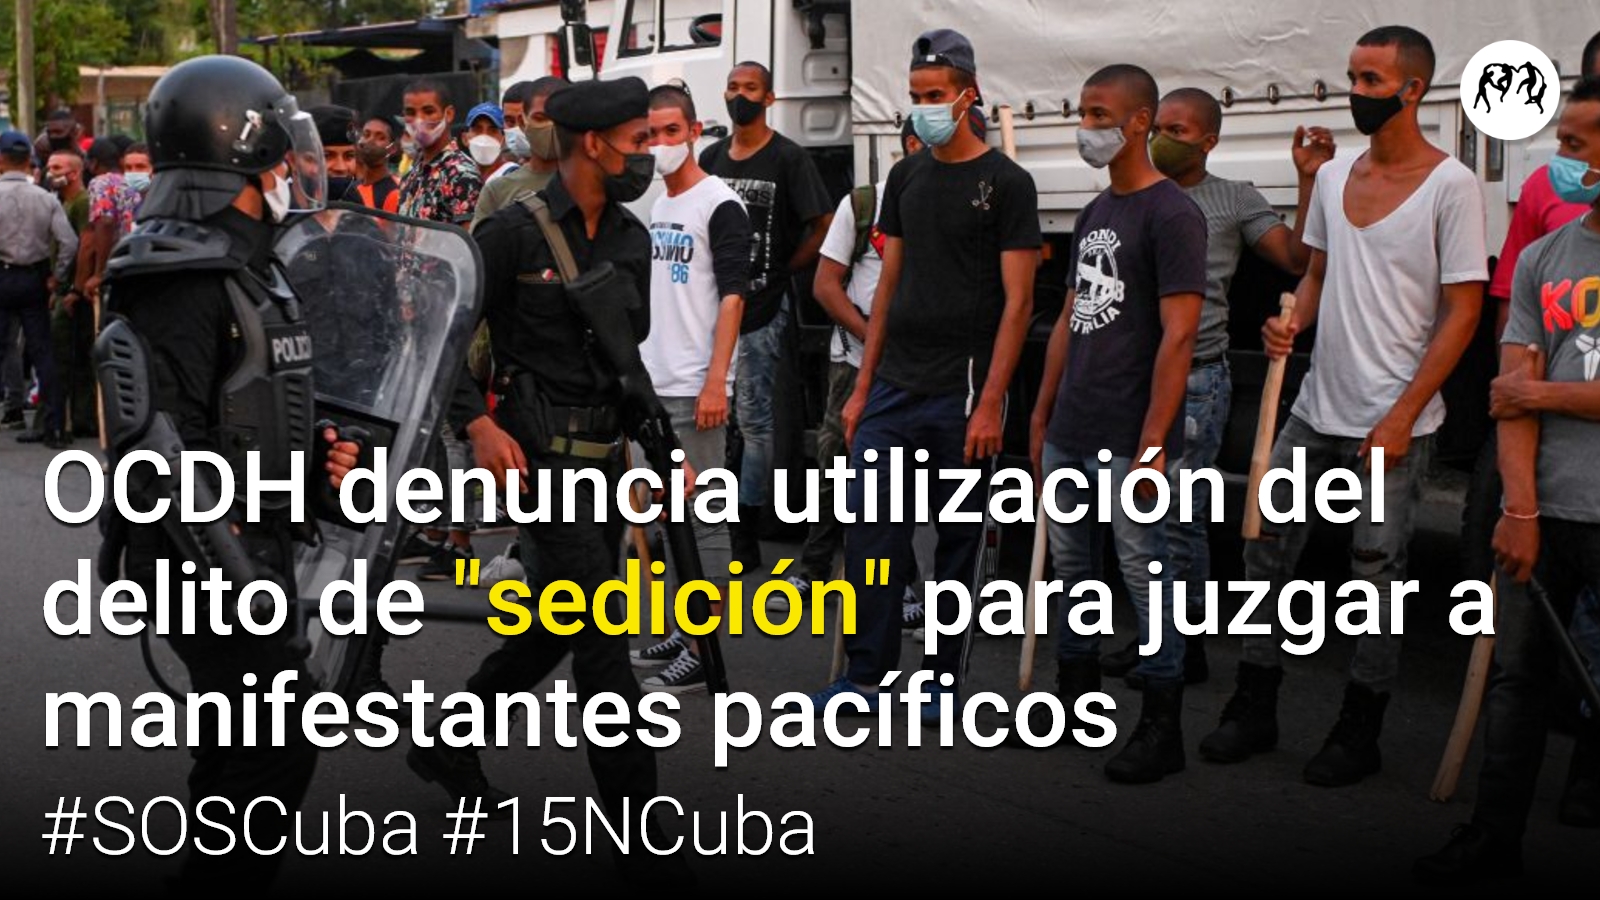 OCDH denuncia utilización del delito de “sedición” por parte del régimen cubano